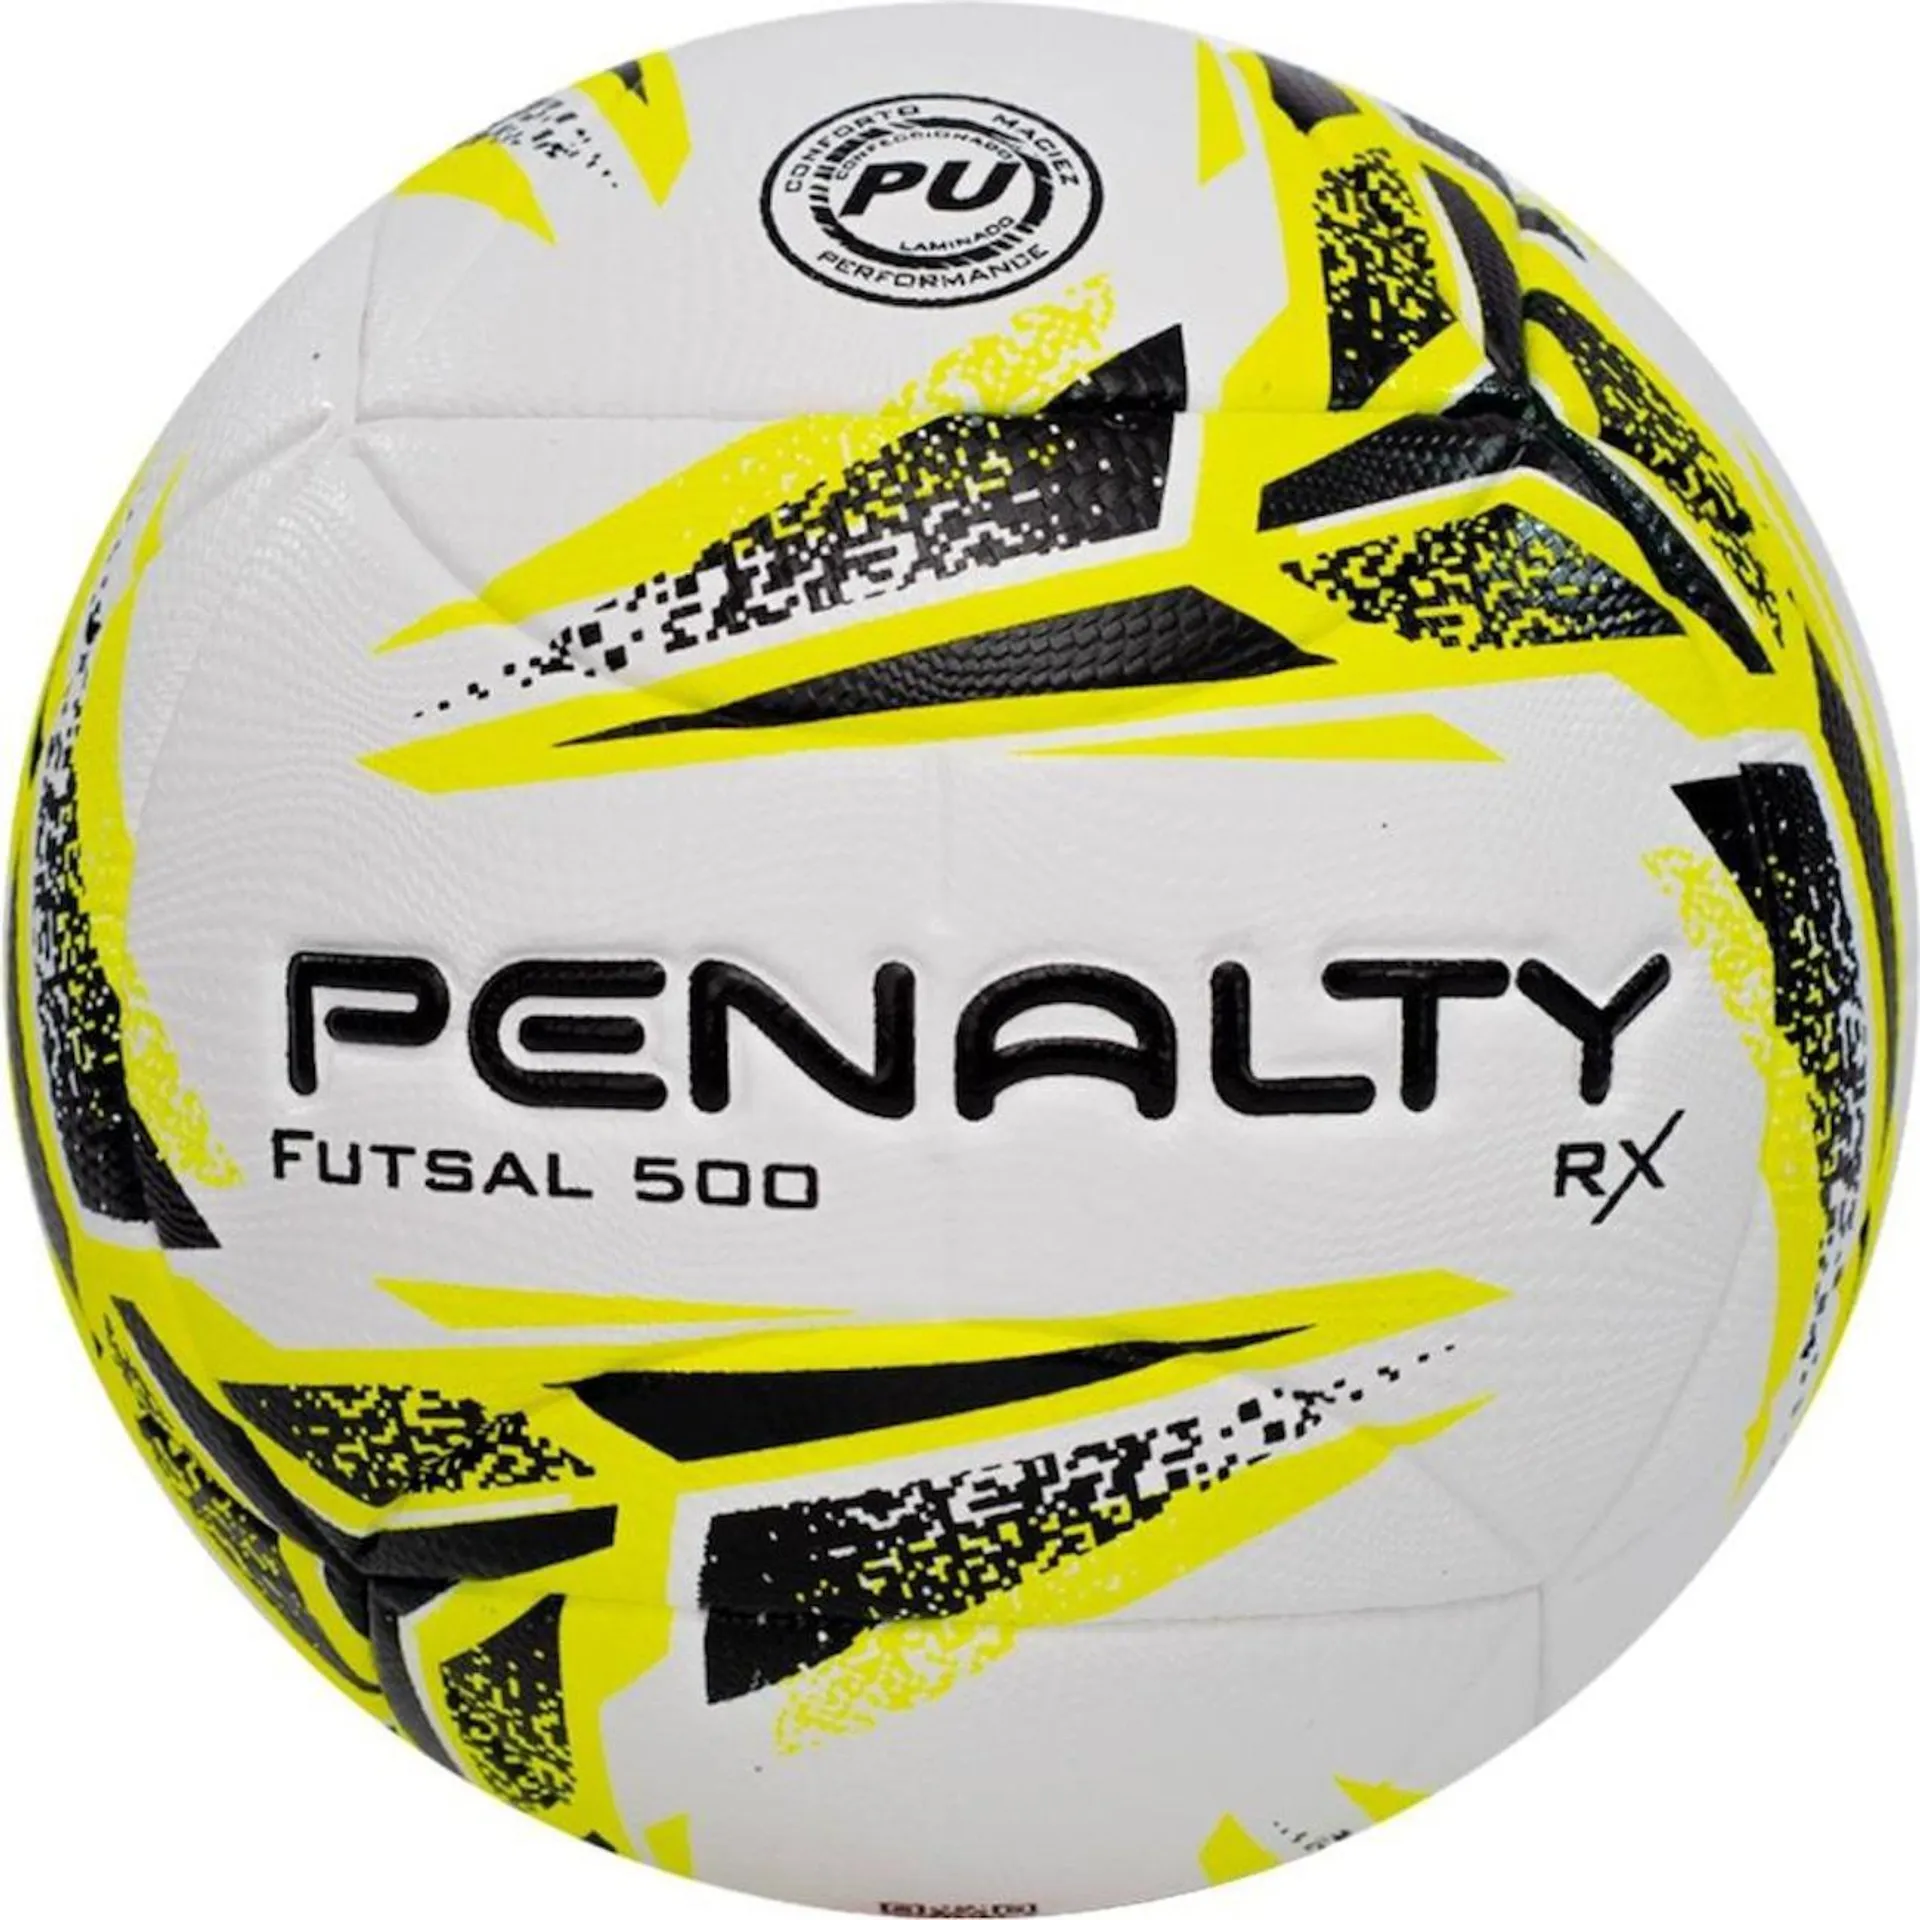 Bola de Futsal Penalty Rx 500 XXIII